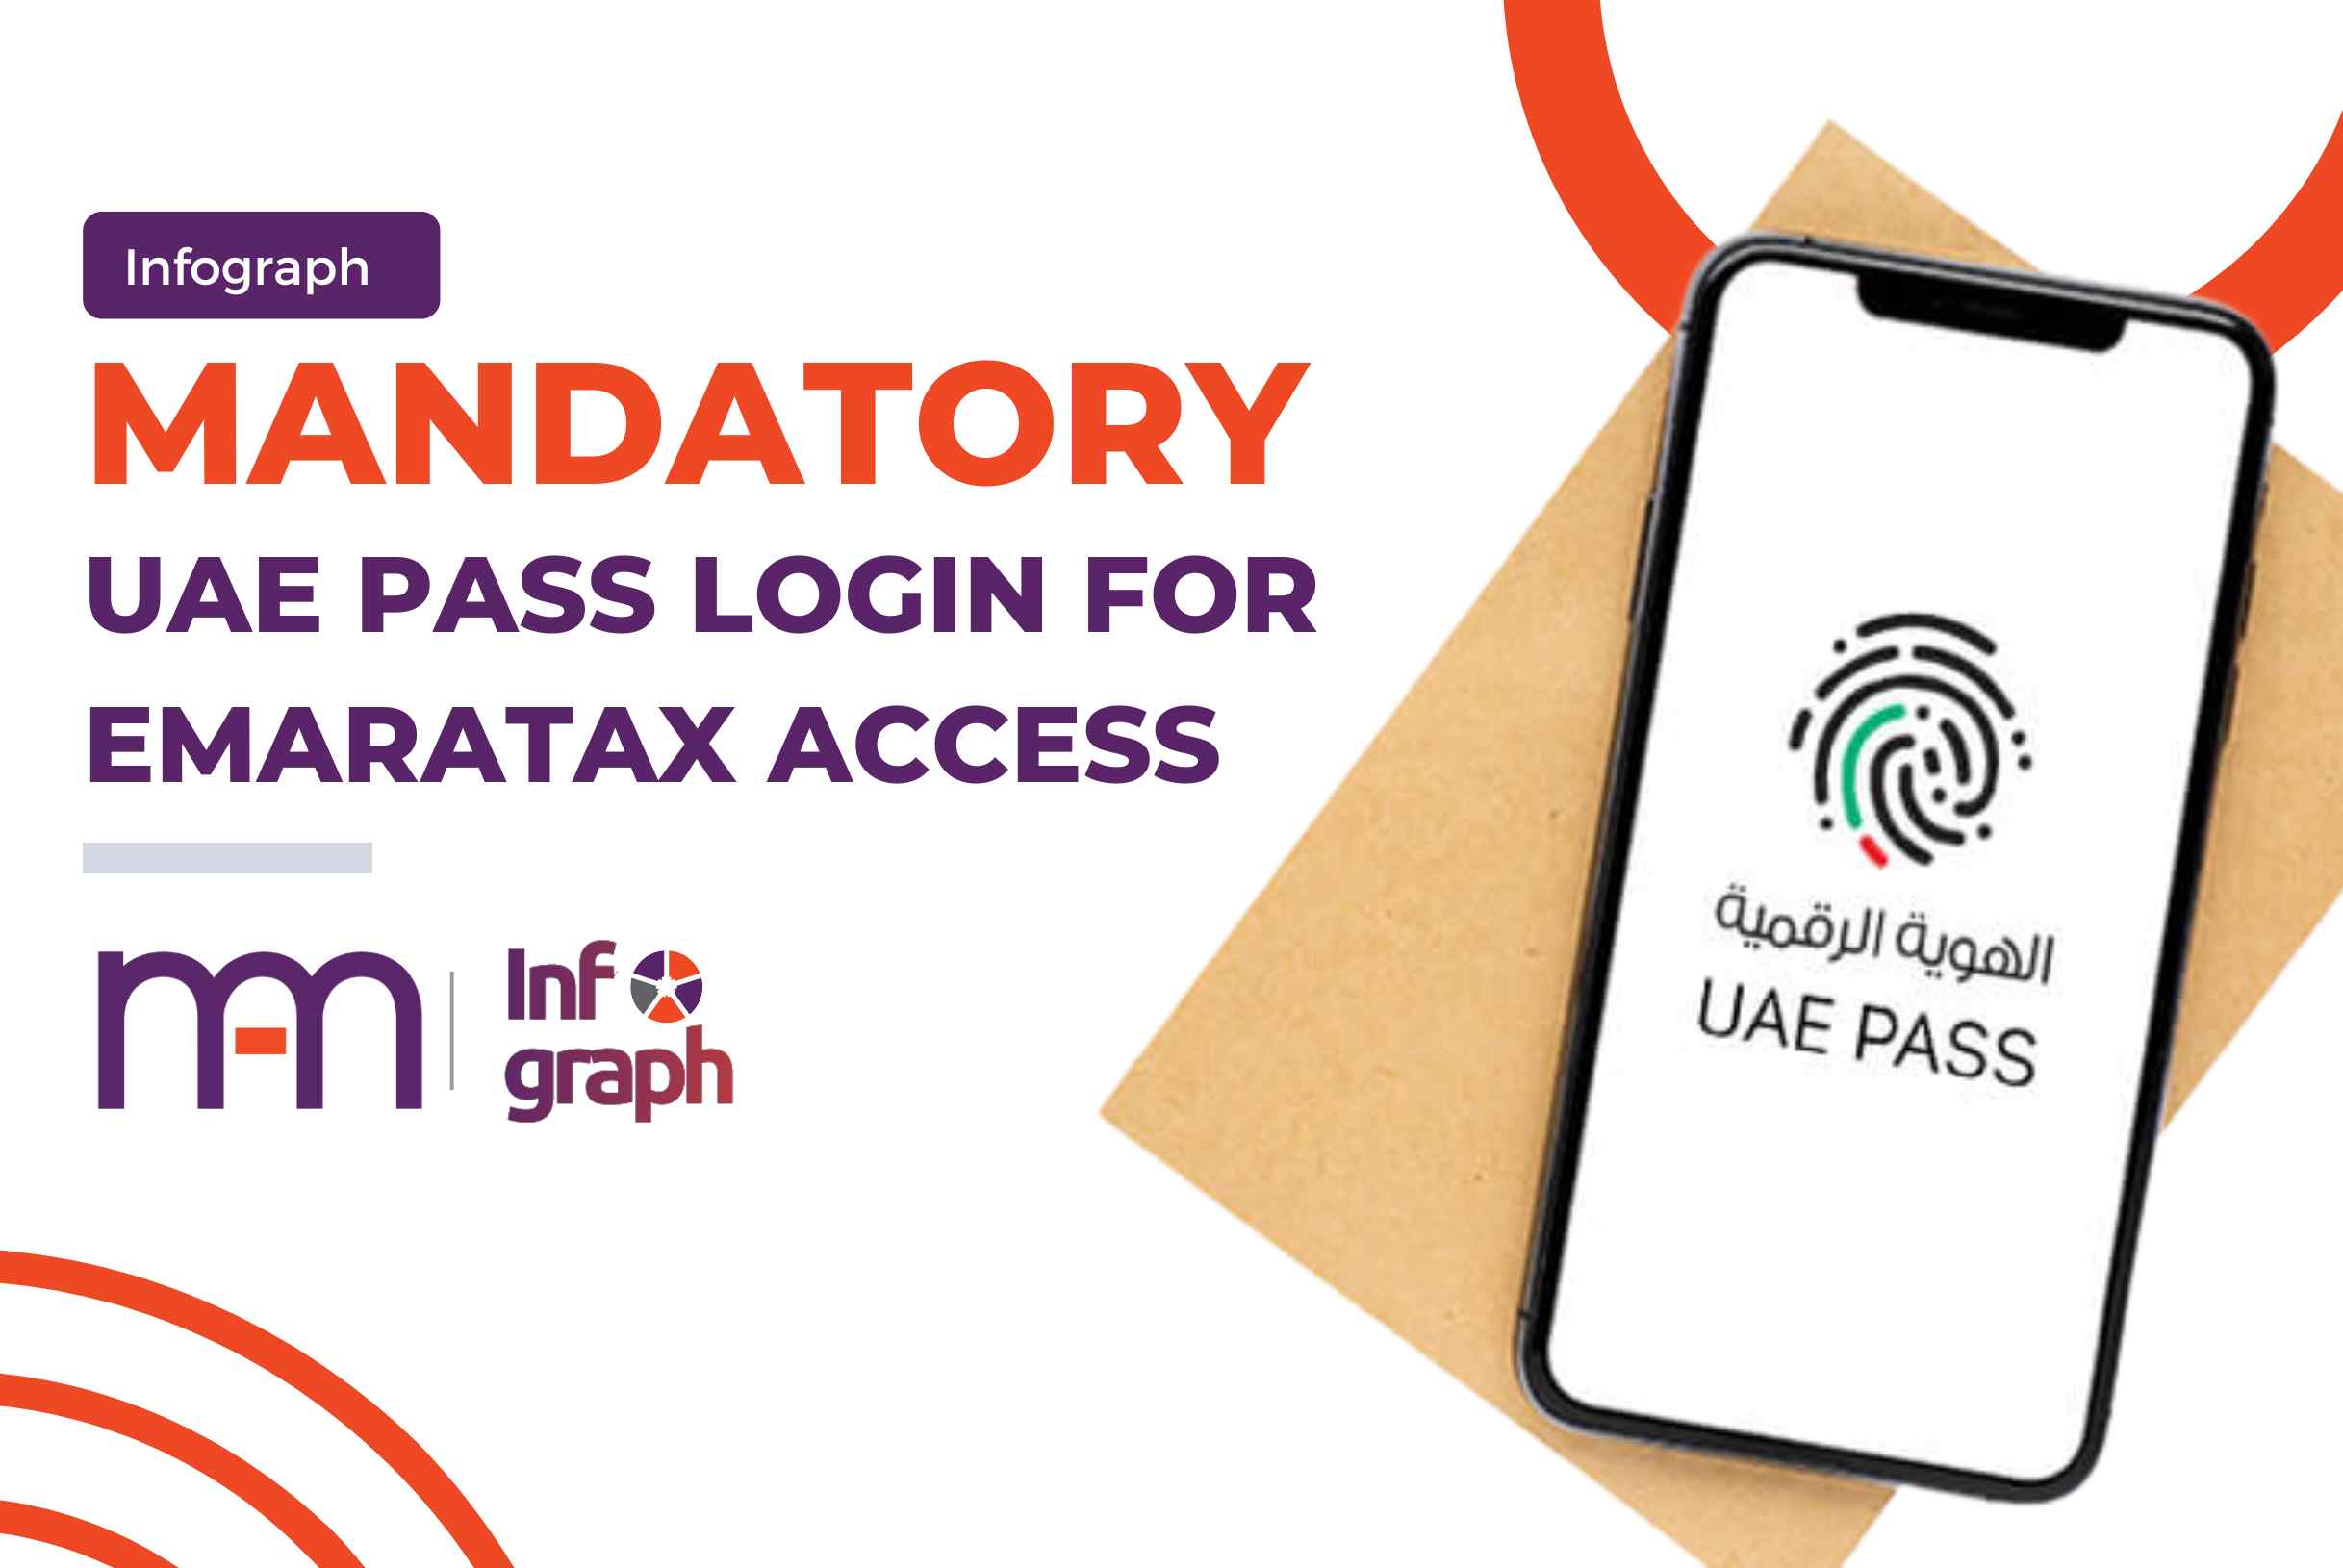 EmaraTax will require a mandatory UAE Pass login.